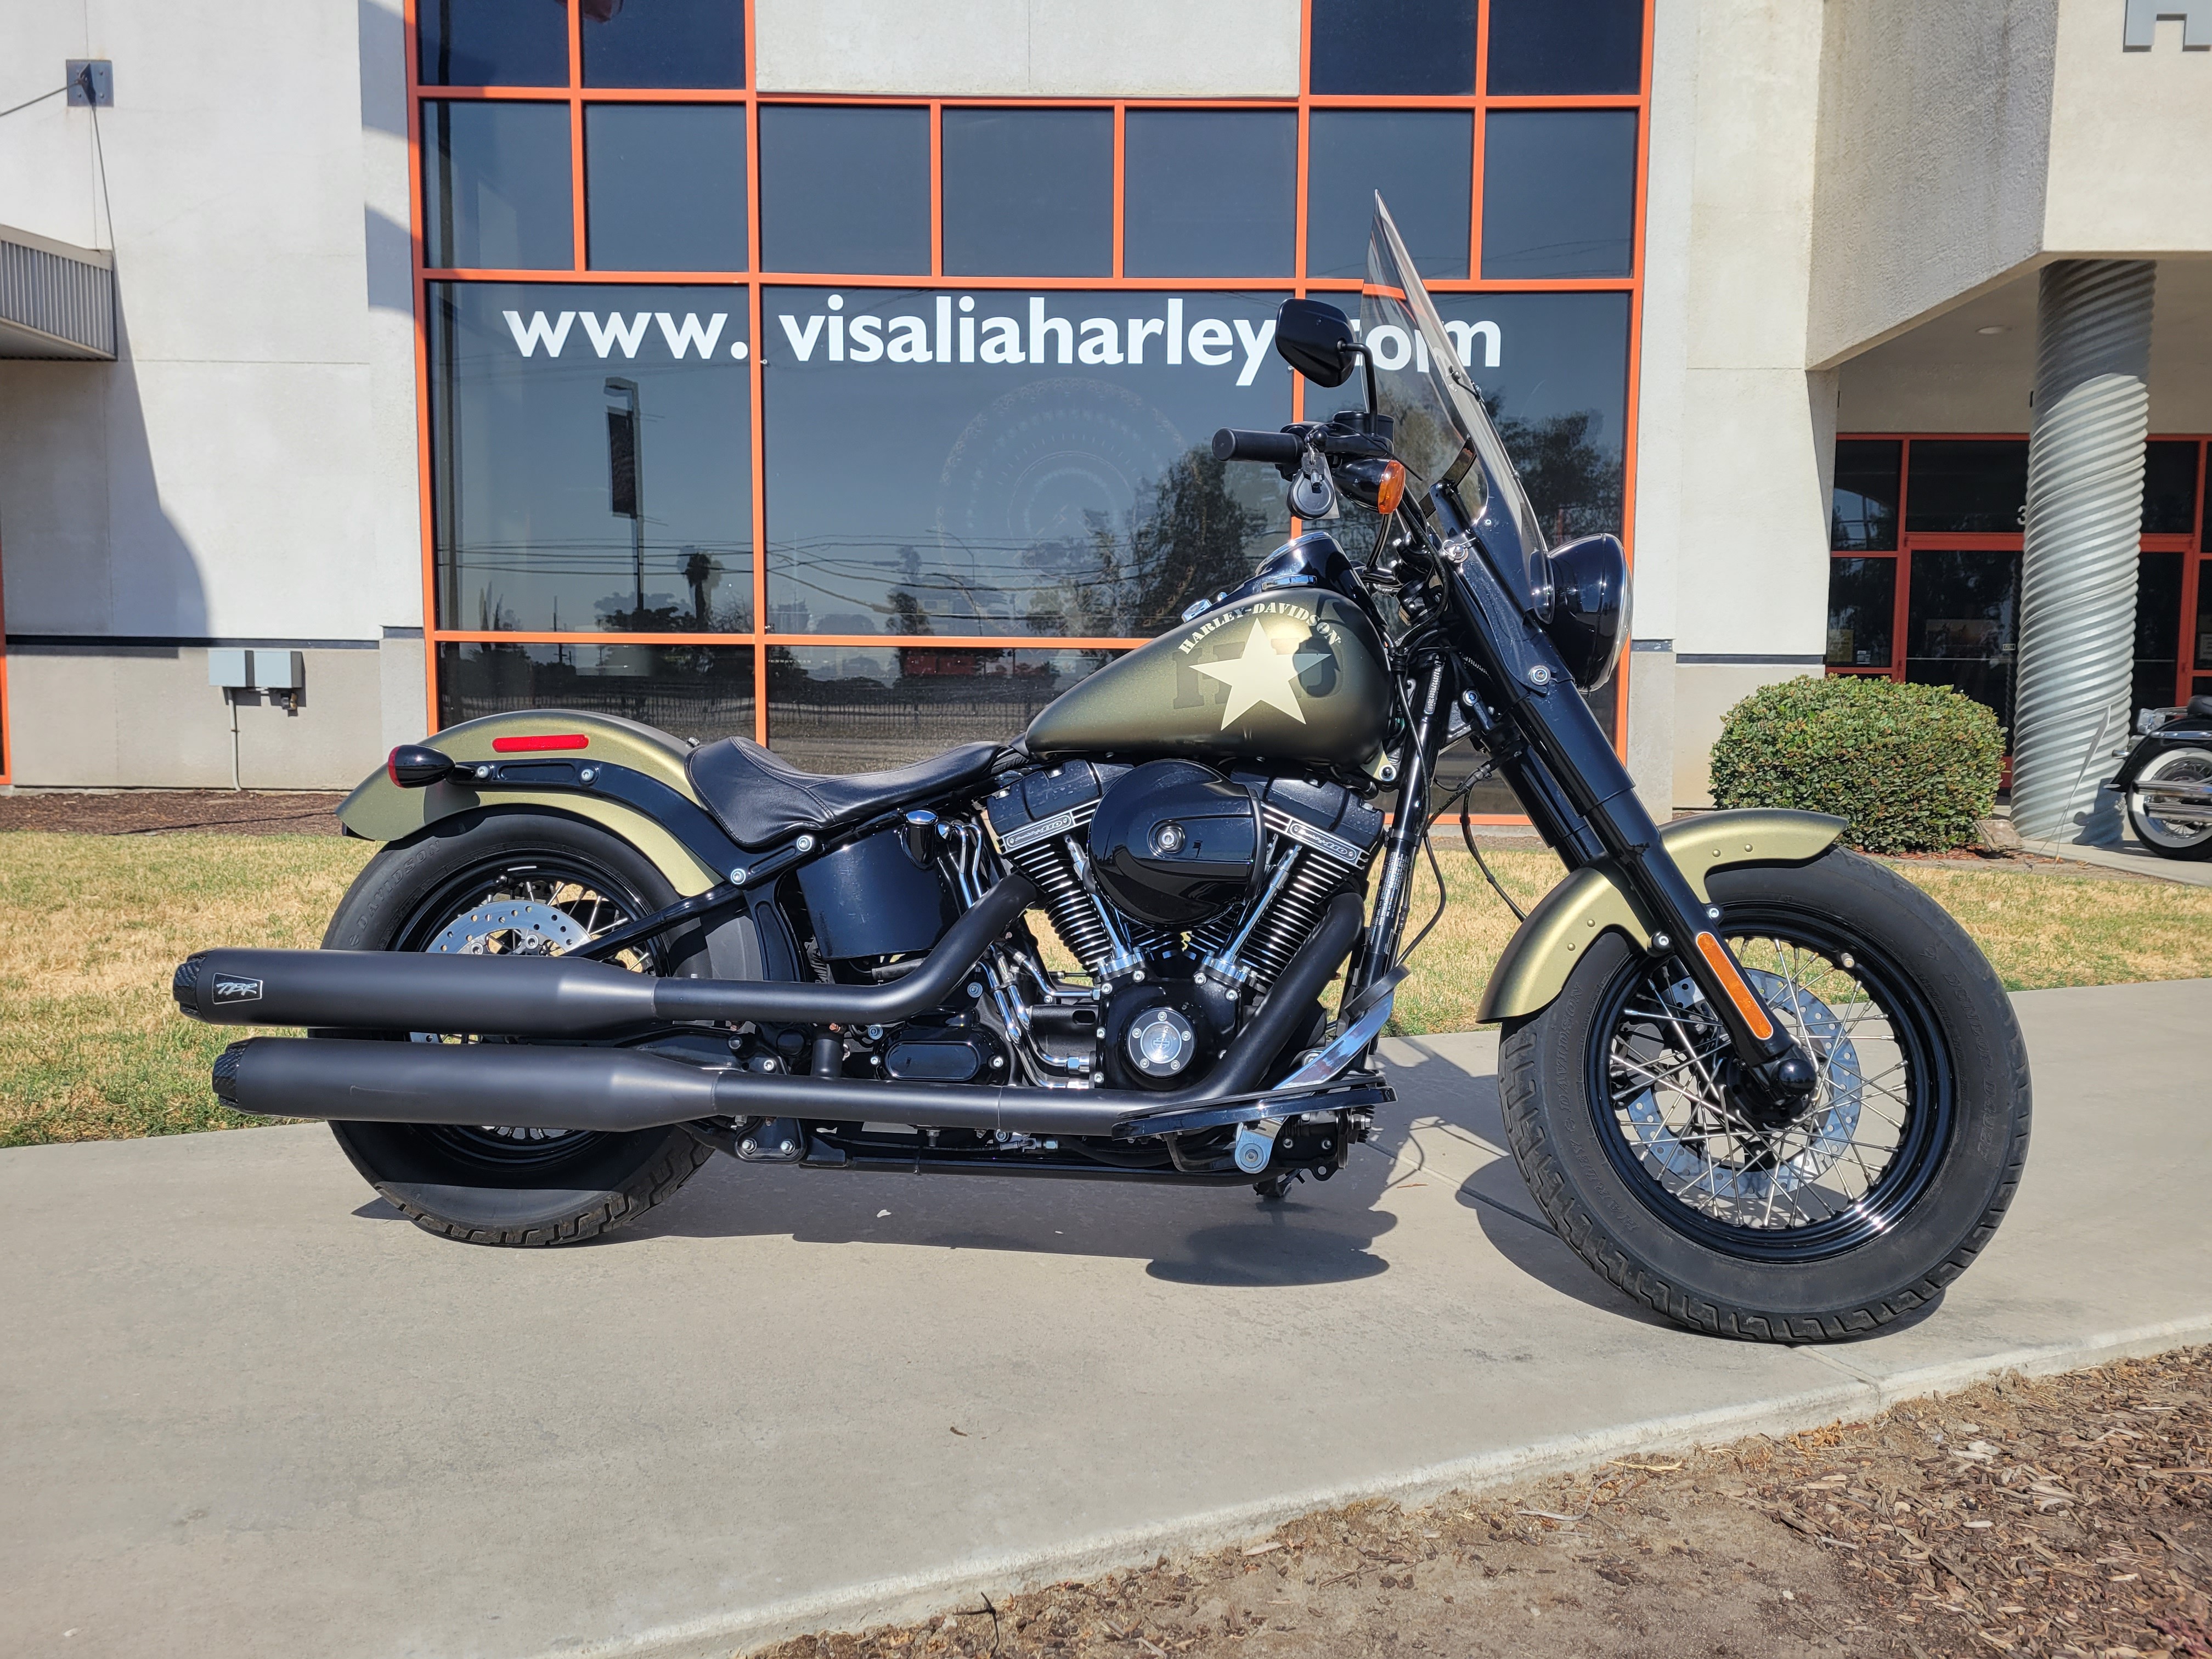 2017 Harley-Davidson S-Series Slim at Visalia Harley-Davidson